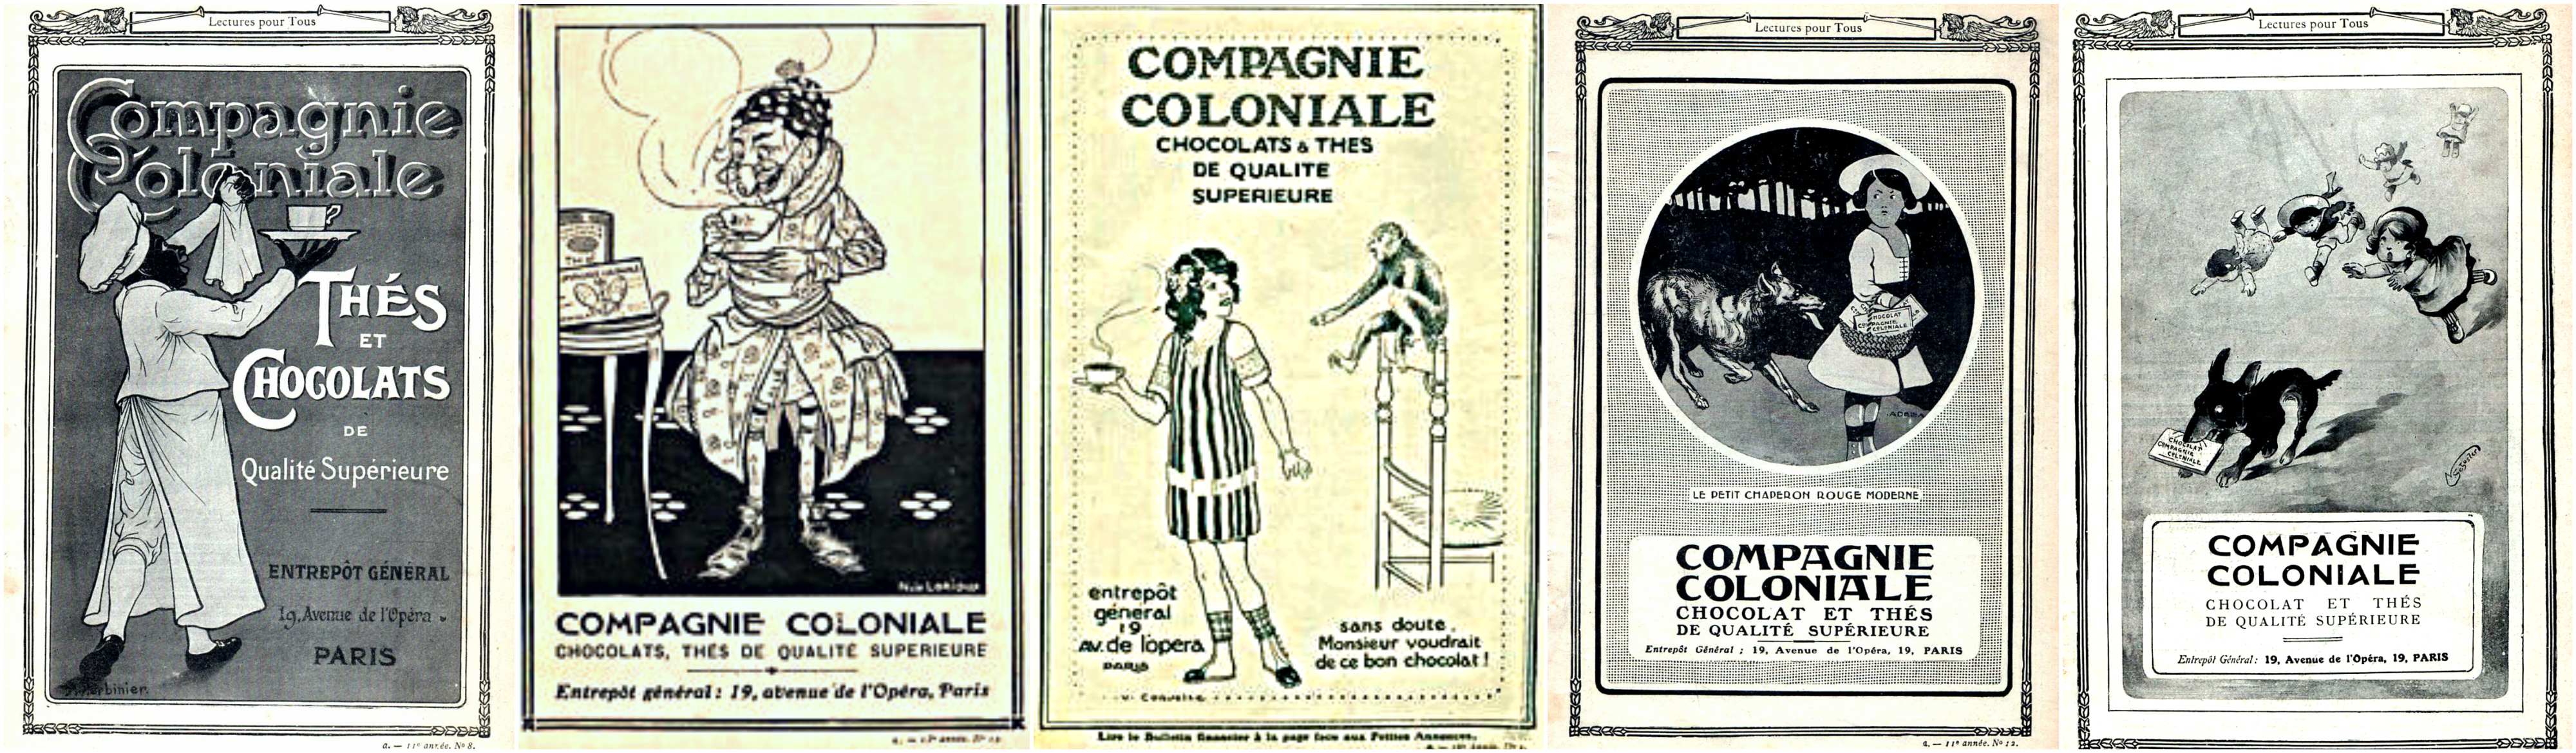 Fondée en 1848, au 19 rue de l’Opéra à Paris, Compagnie Coloniale a commencé par une activité d'importation et de distribution de chocolats. La maison a été rachetée par les thés de l’Eléphant et Unilever avant d'être reprise par Vincent Balaÿ, en 2010.